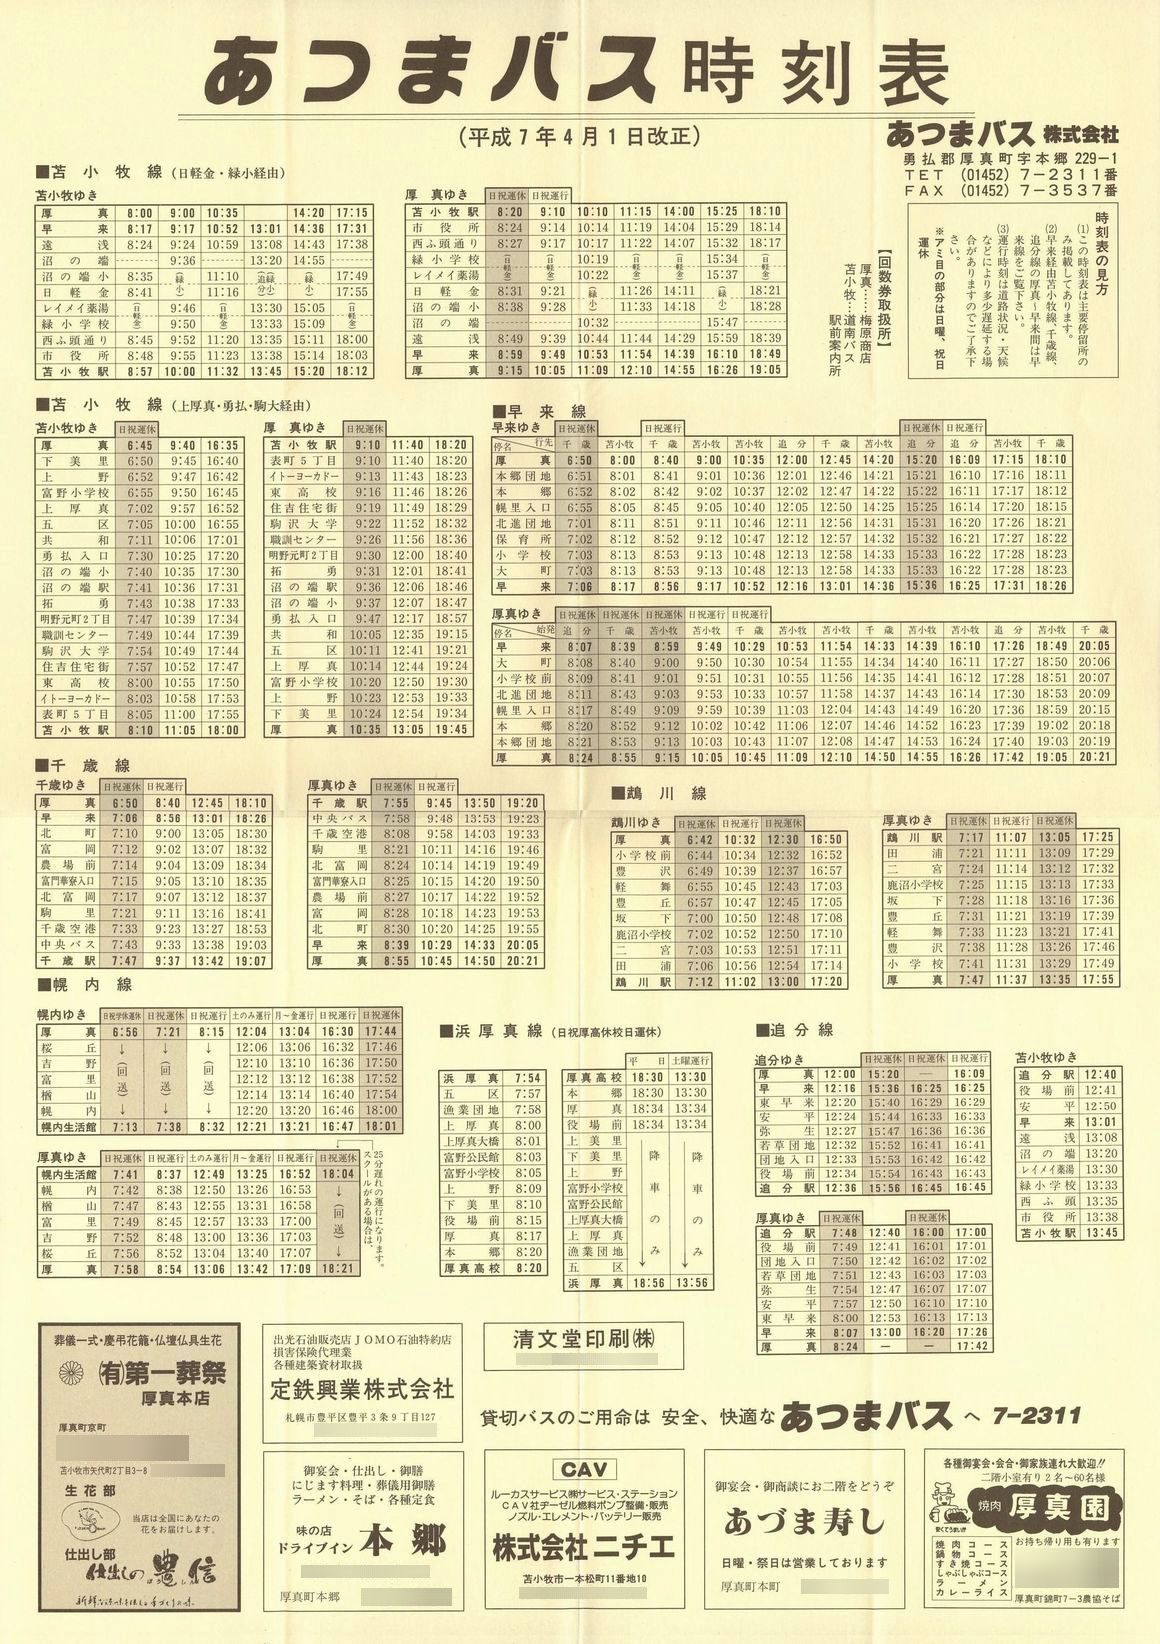 1995-04-01改正_あつまバス_時刻表